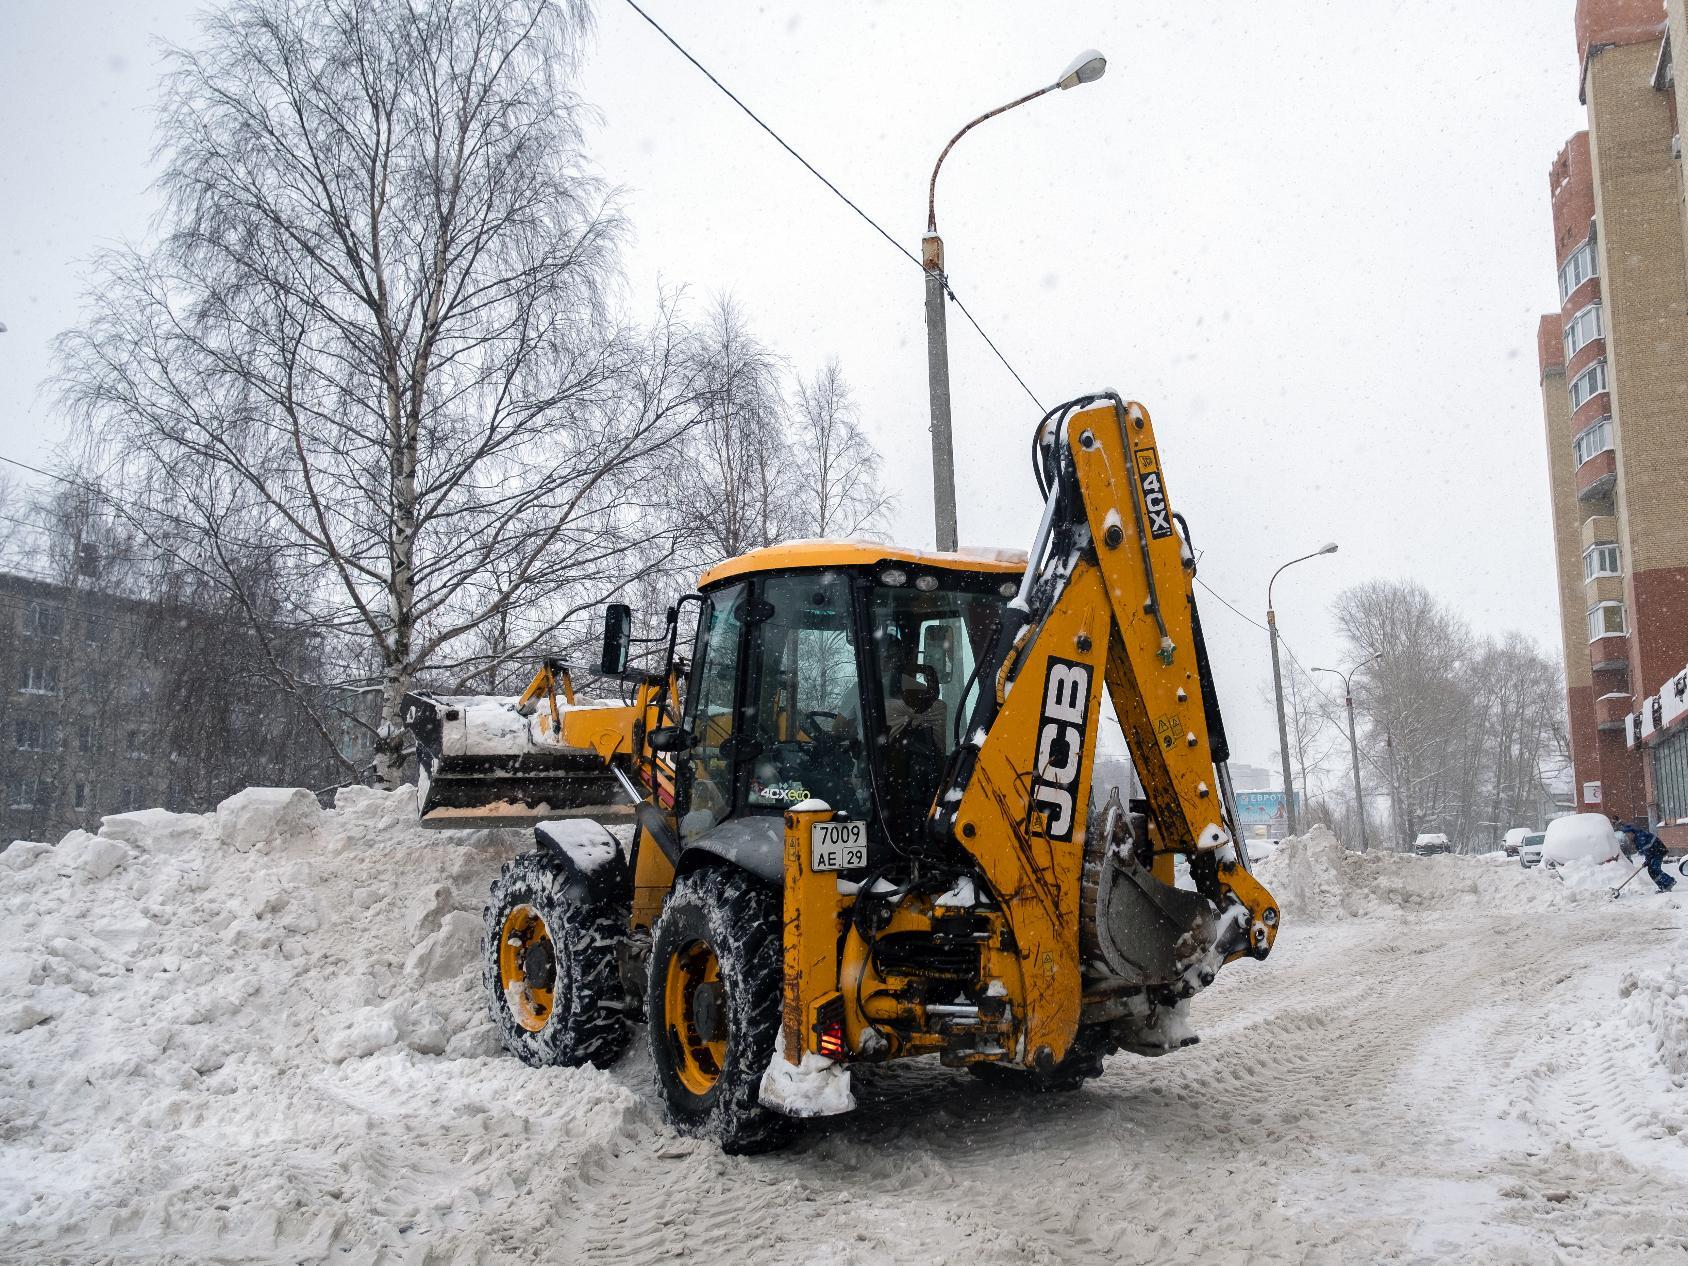 Техники для уборки снега в городе не хватает, особенно малогабаритной для очистки тротуаров. 